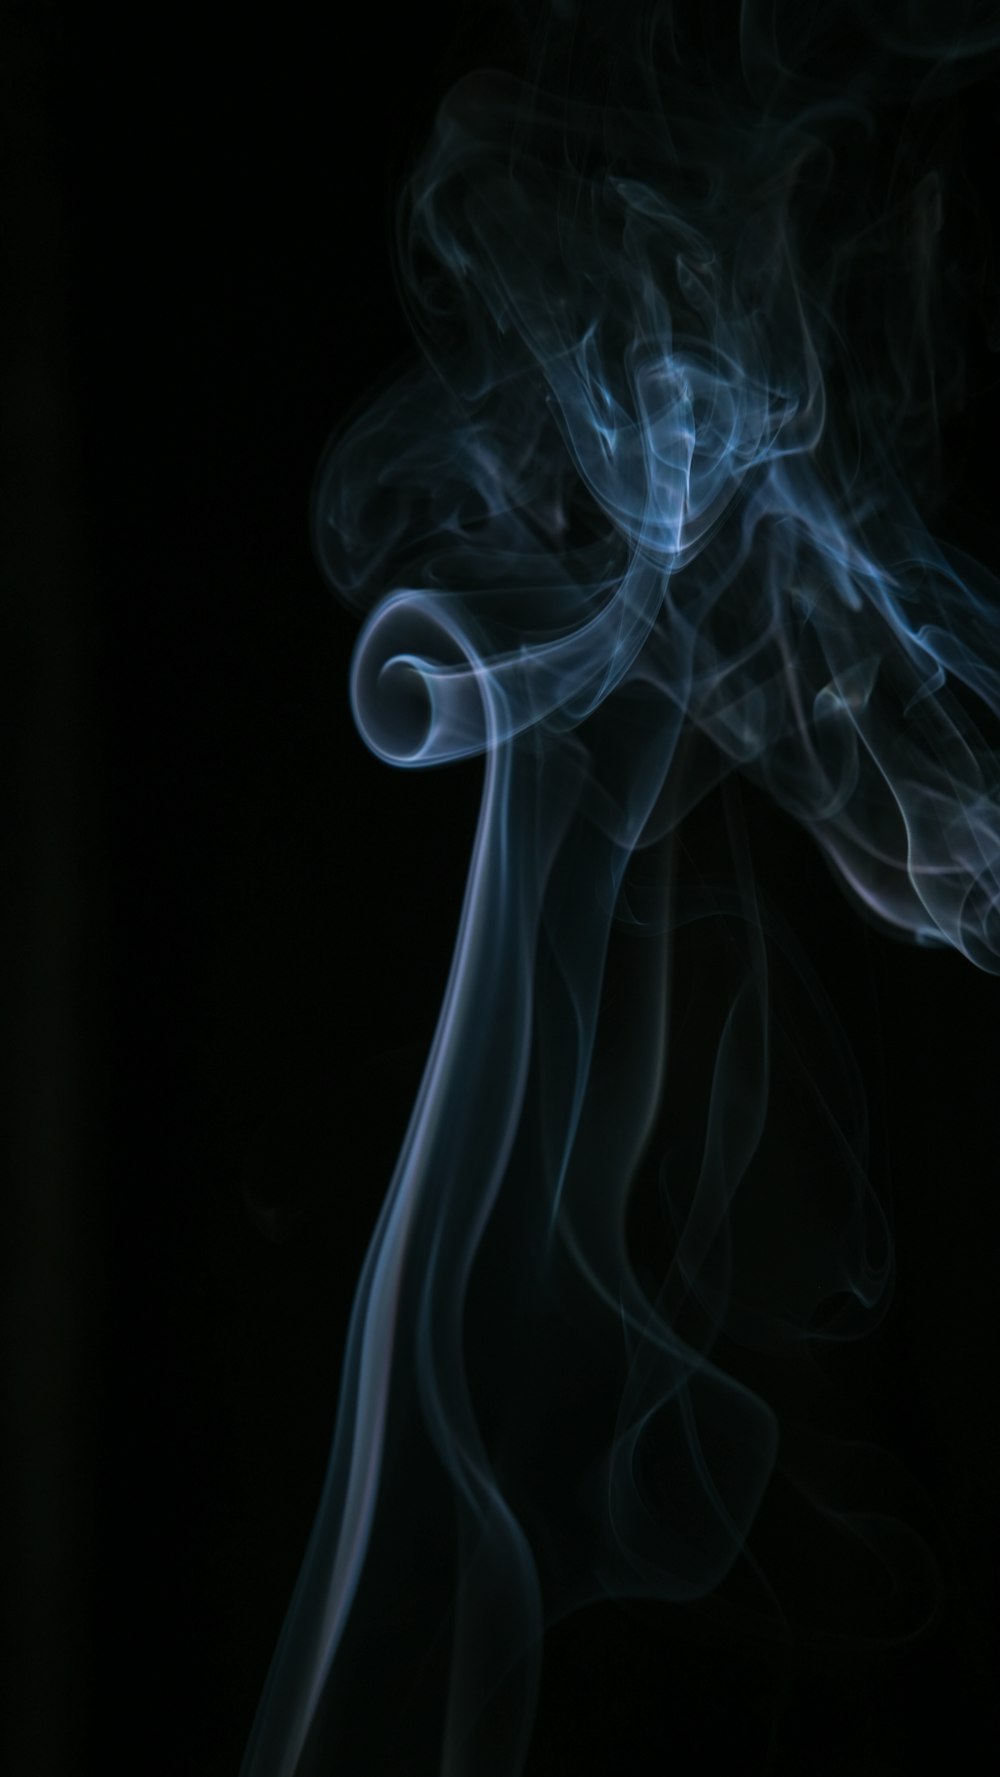 ilustração de fumaça branca e azul